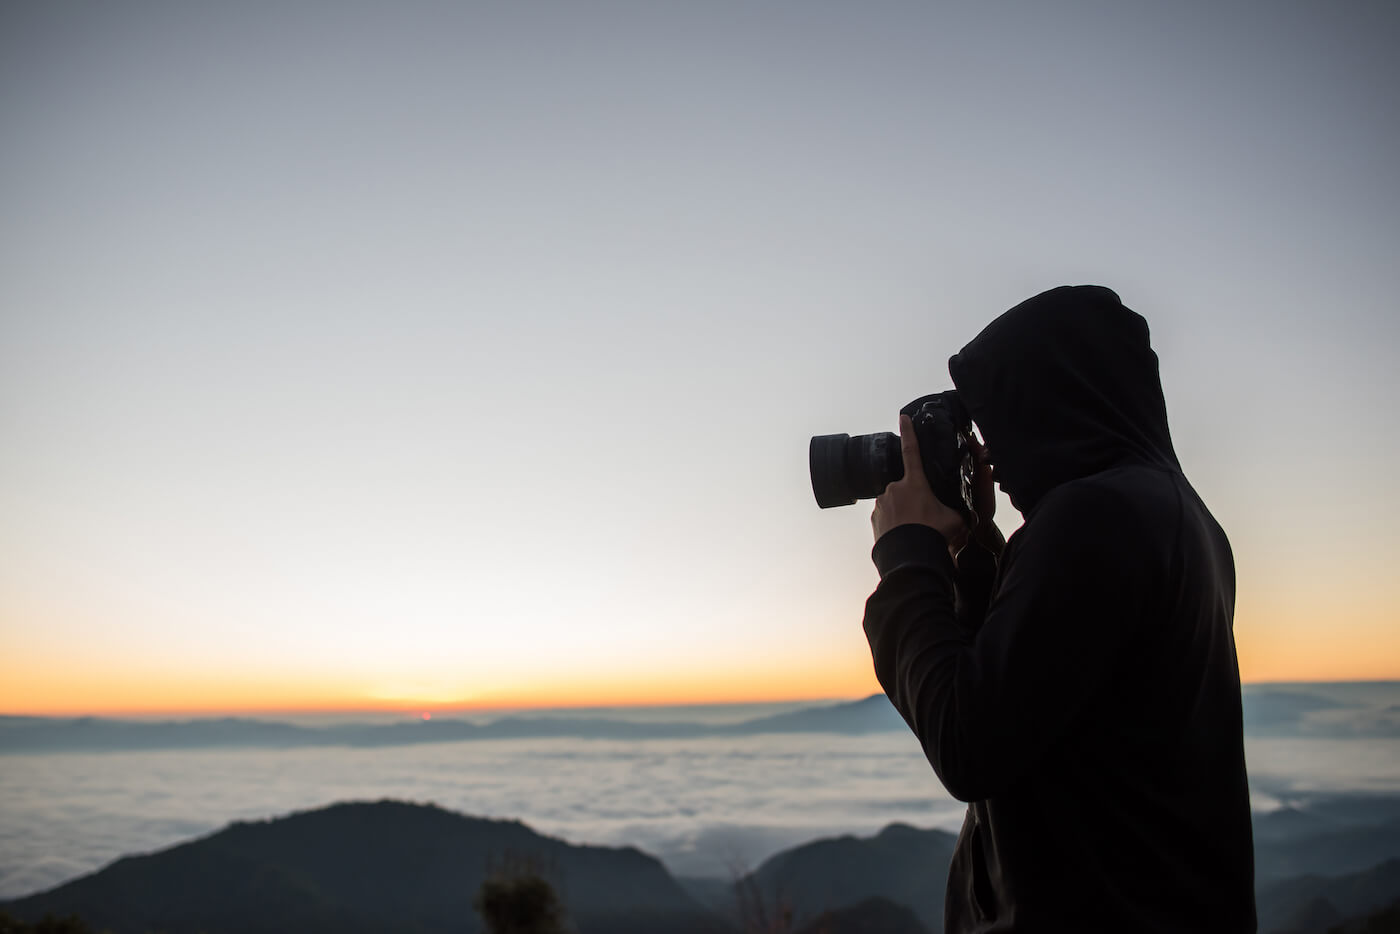 Un photographe situé en camping prend une photo du paysage